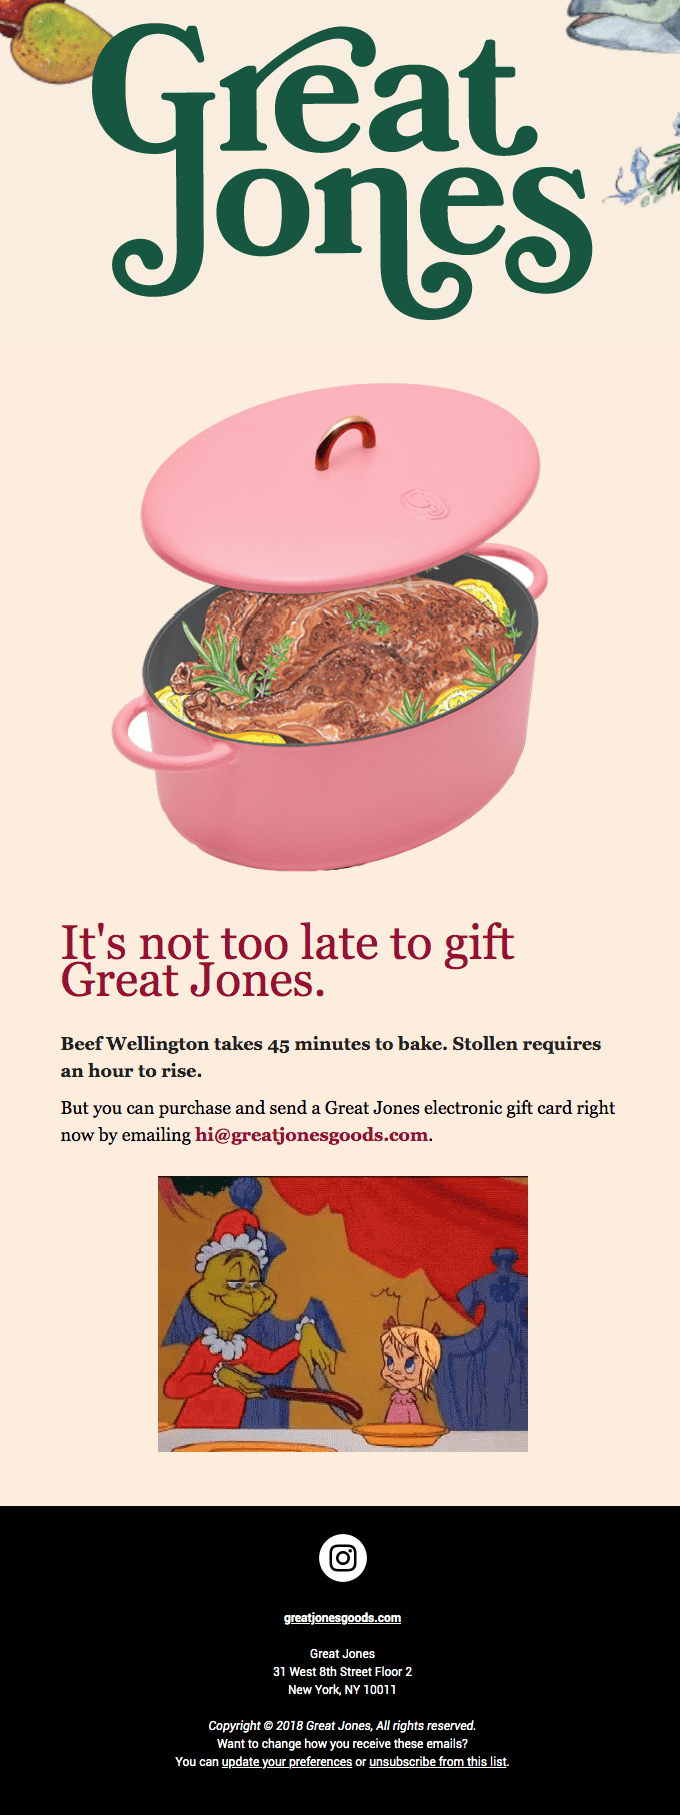 Great Jones Retro-Futurist Email